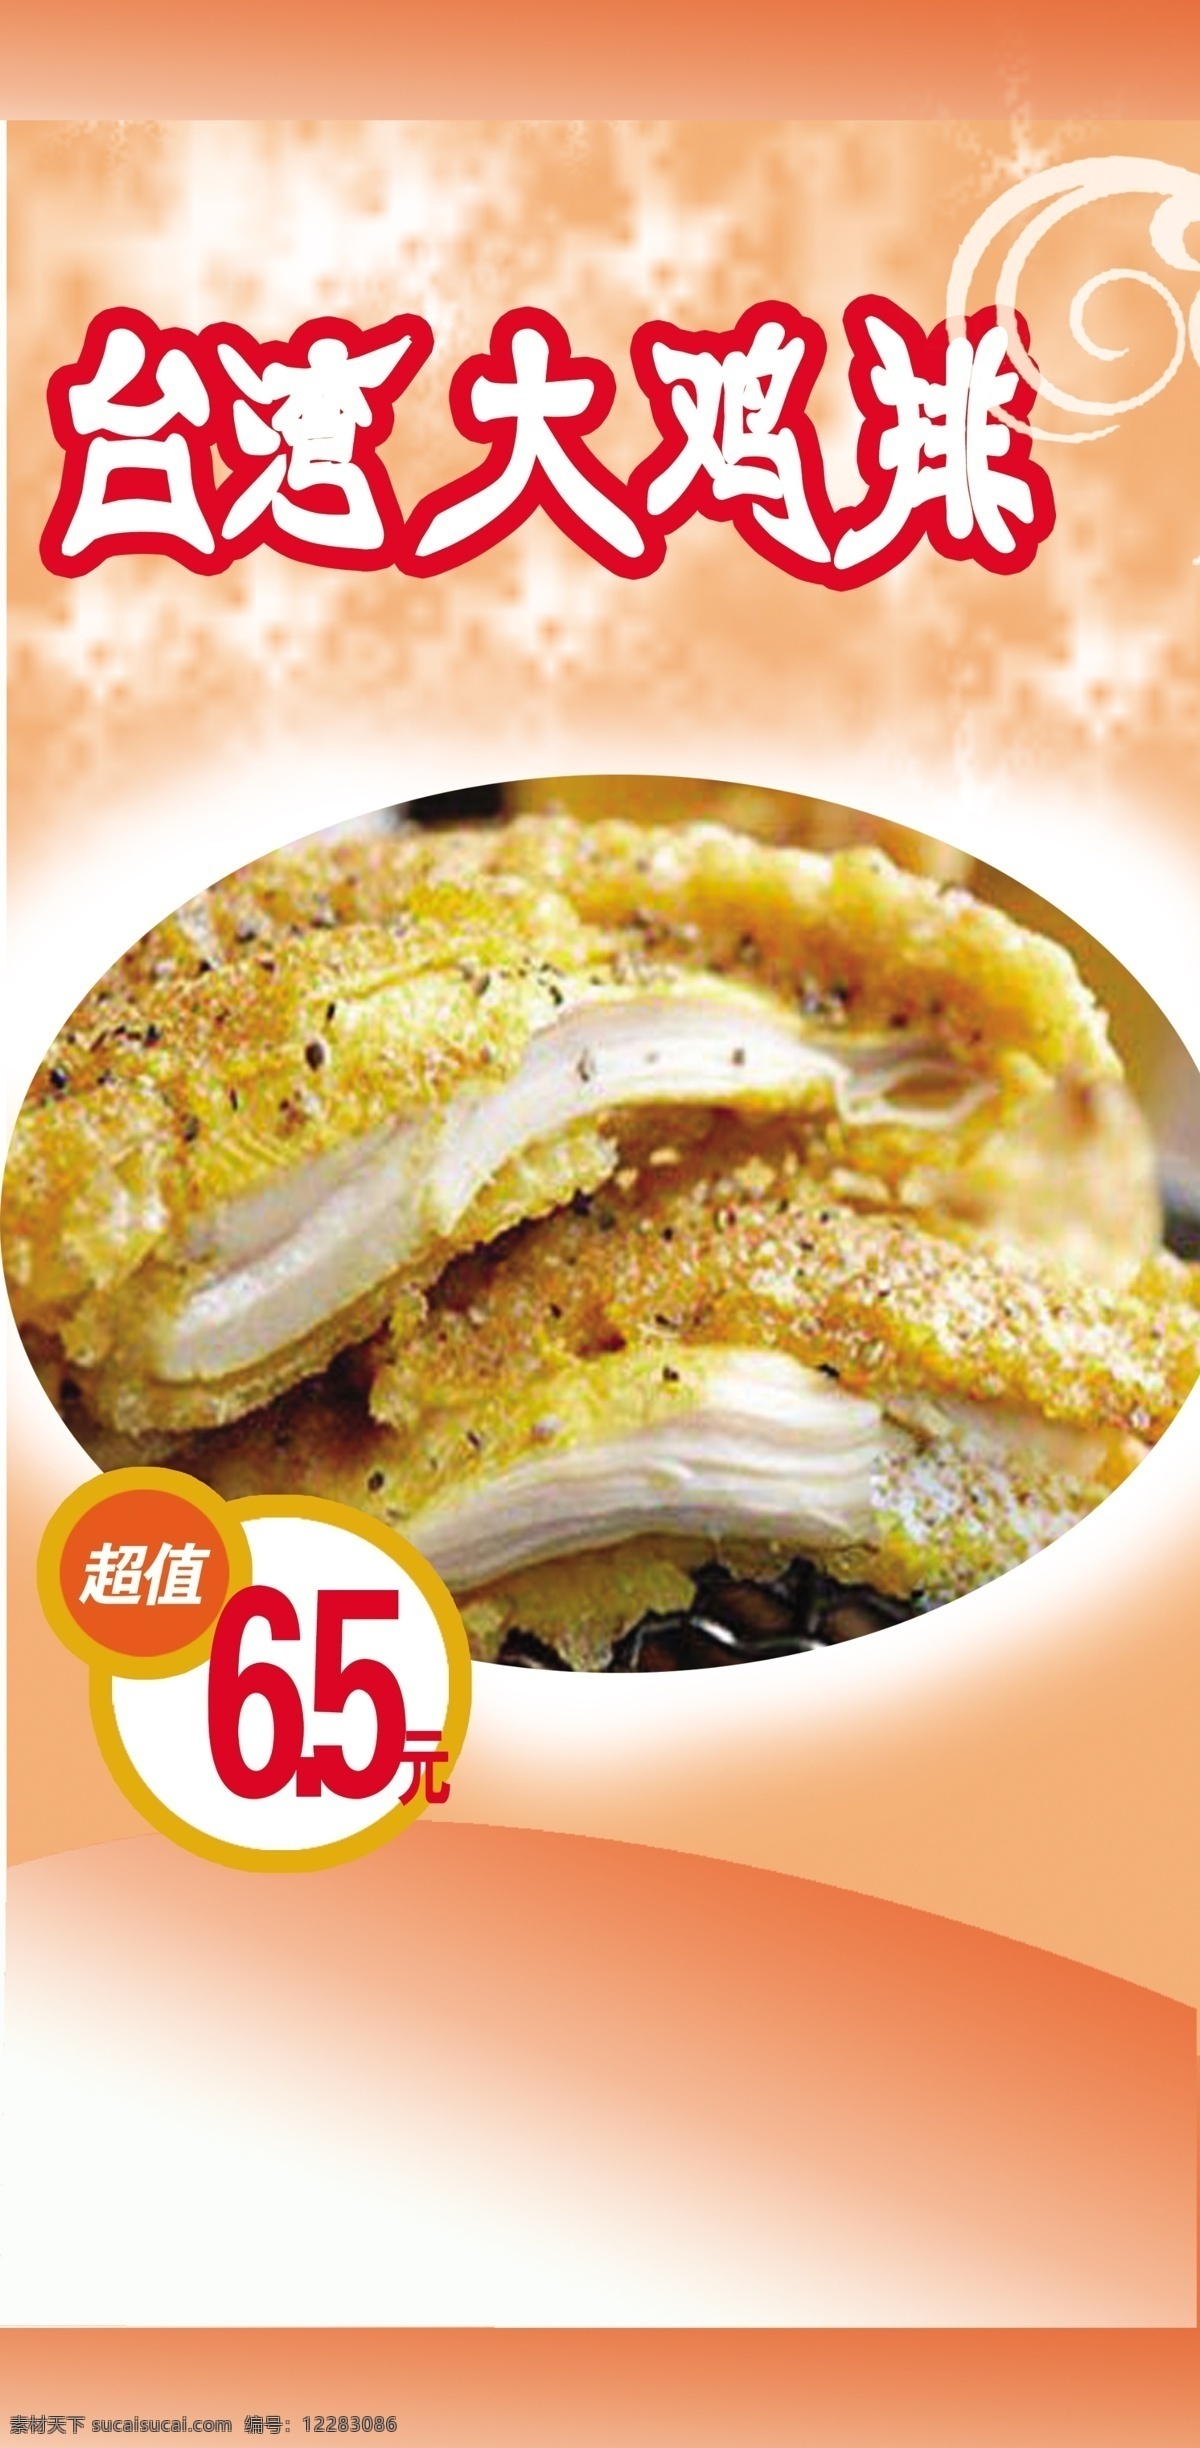 台湾大鸡排 鸡排 小吃 美食 背景 招贴设计 白色